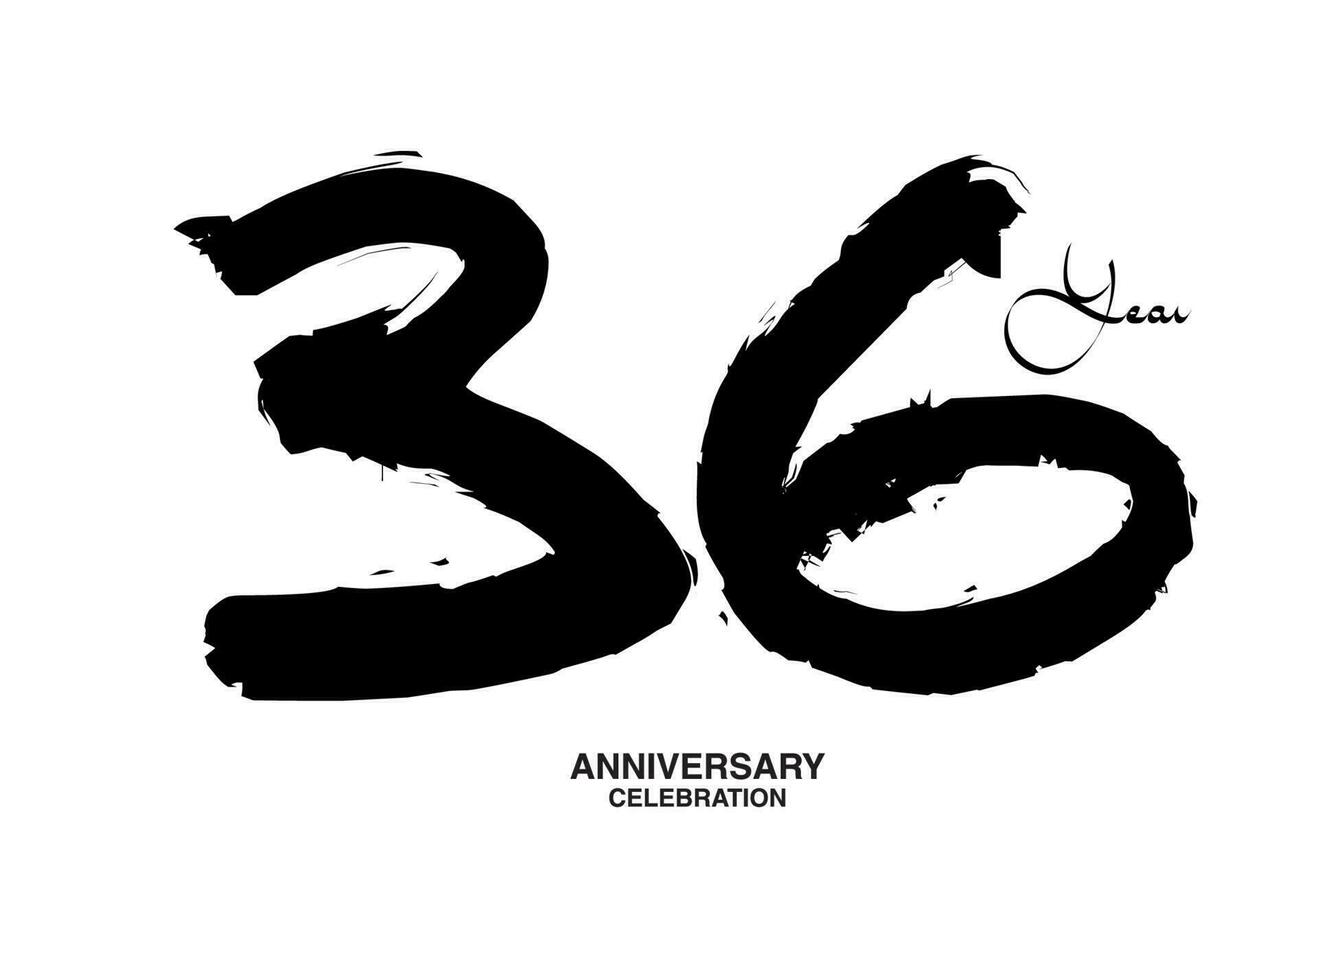 36 Jahre Jahrestag Feier Vektor Vorlage, 36 Nummer Logo Design, 36 .. Geburtstag, schwarz Beschriftung Zahlen Bürste Zeichnung Hand gezeichnet skizzieren, schwarz Nummer, Jahrestag Vektor Illustration